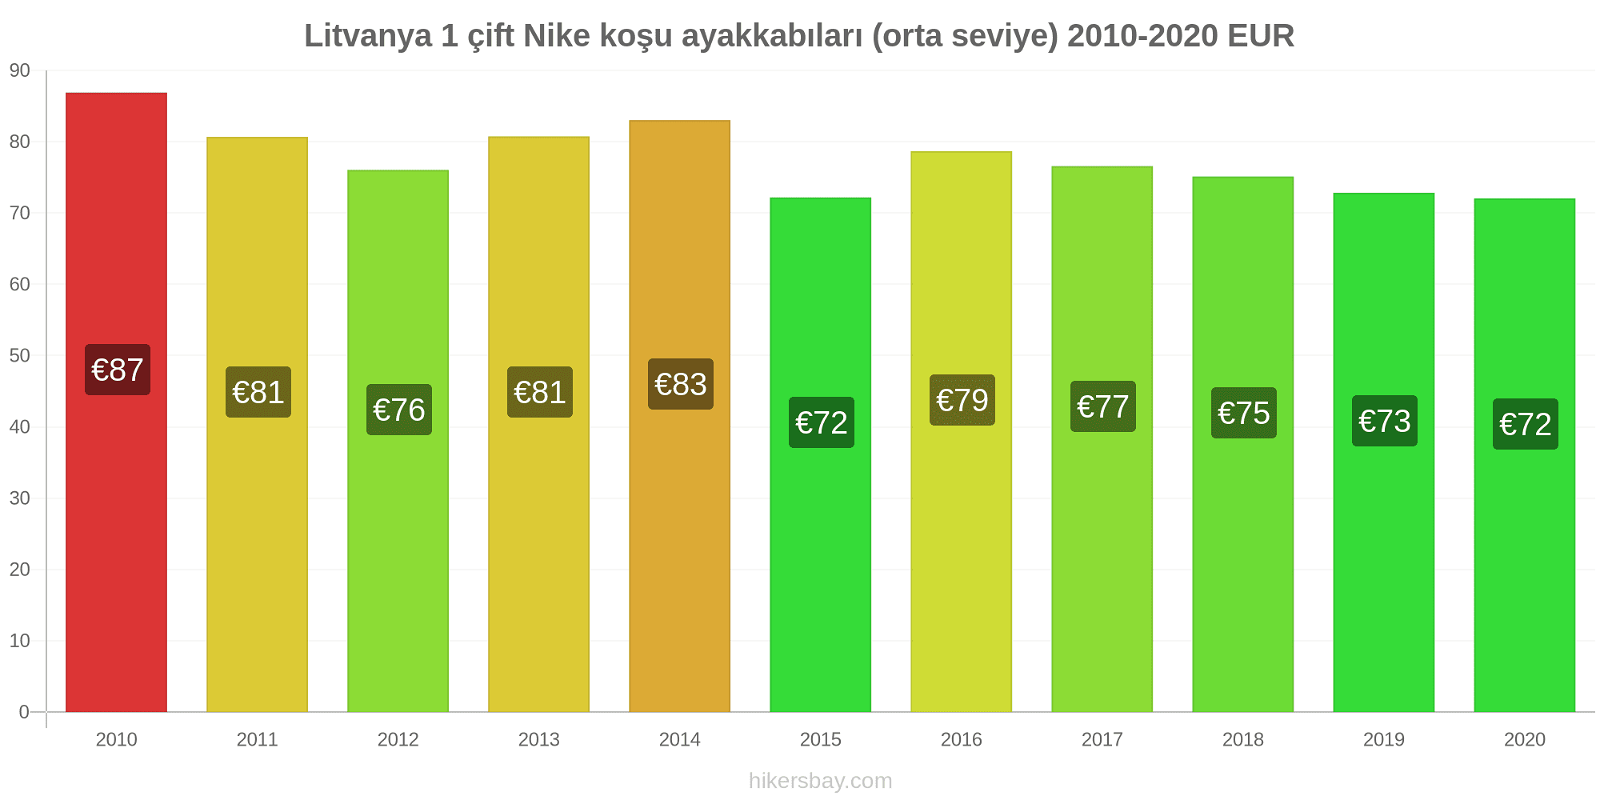 Litvanya fiyat değişiklikleri 1 çift Nike koşu ayakkabıları (orta seviye) hikersbay.com